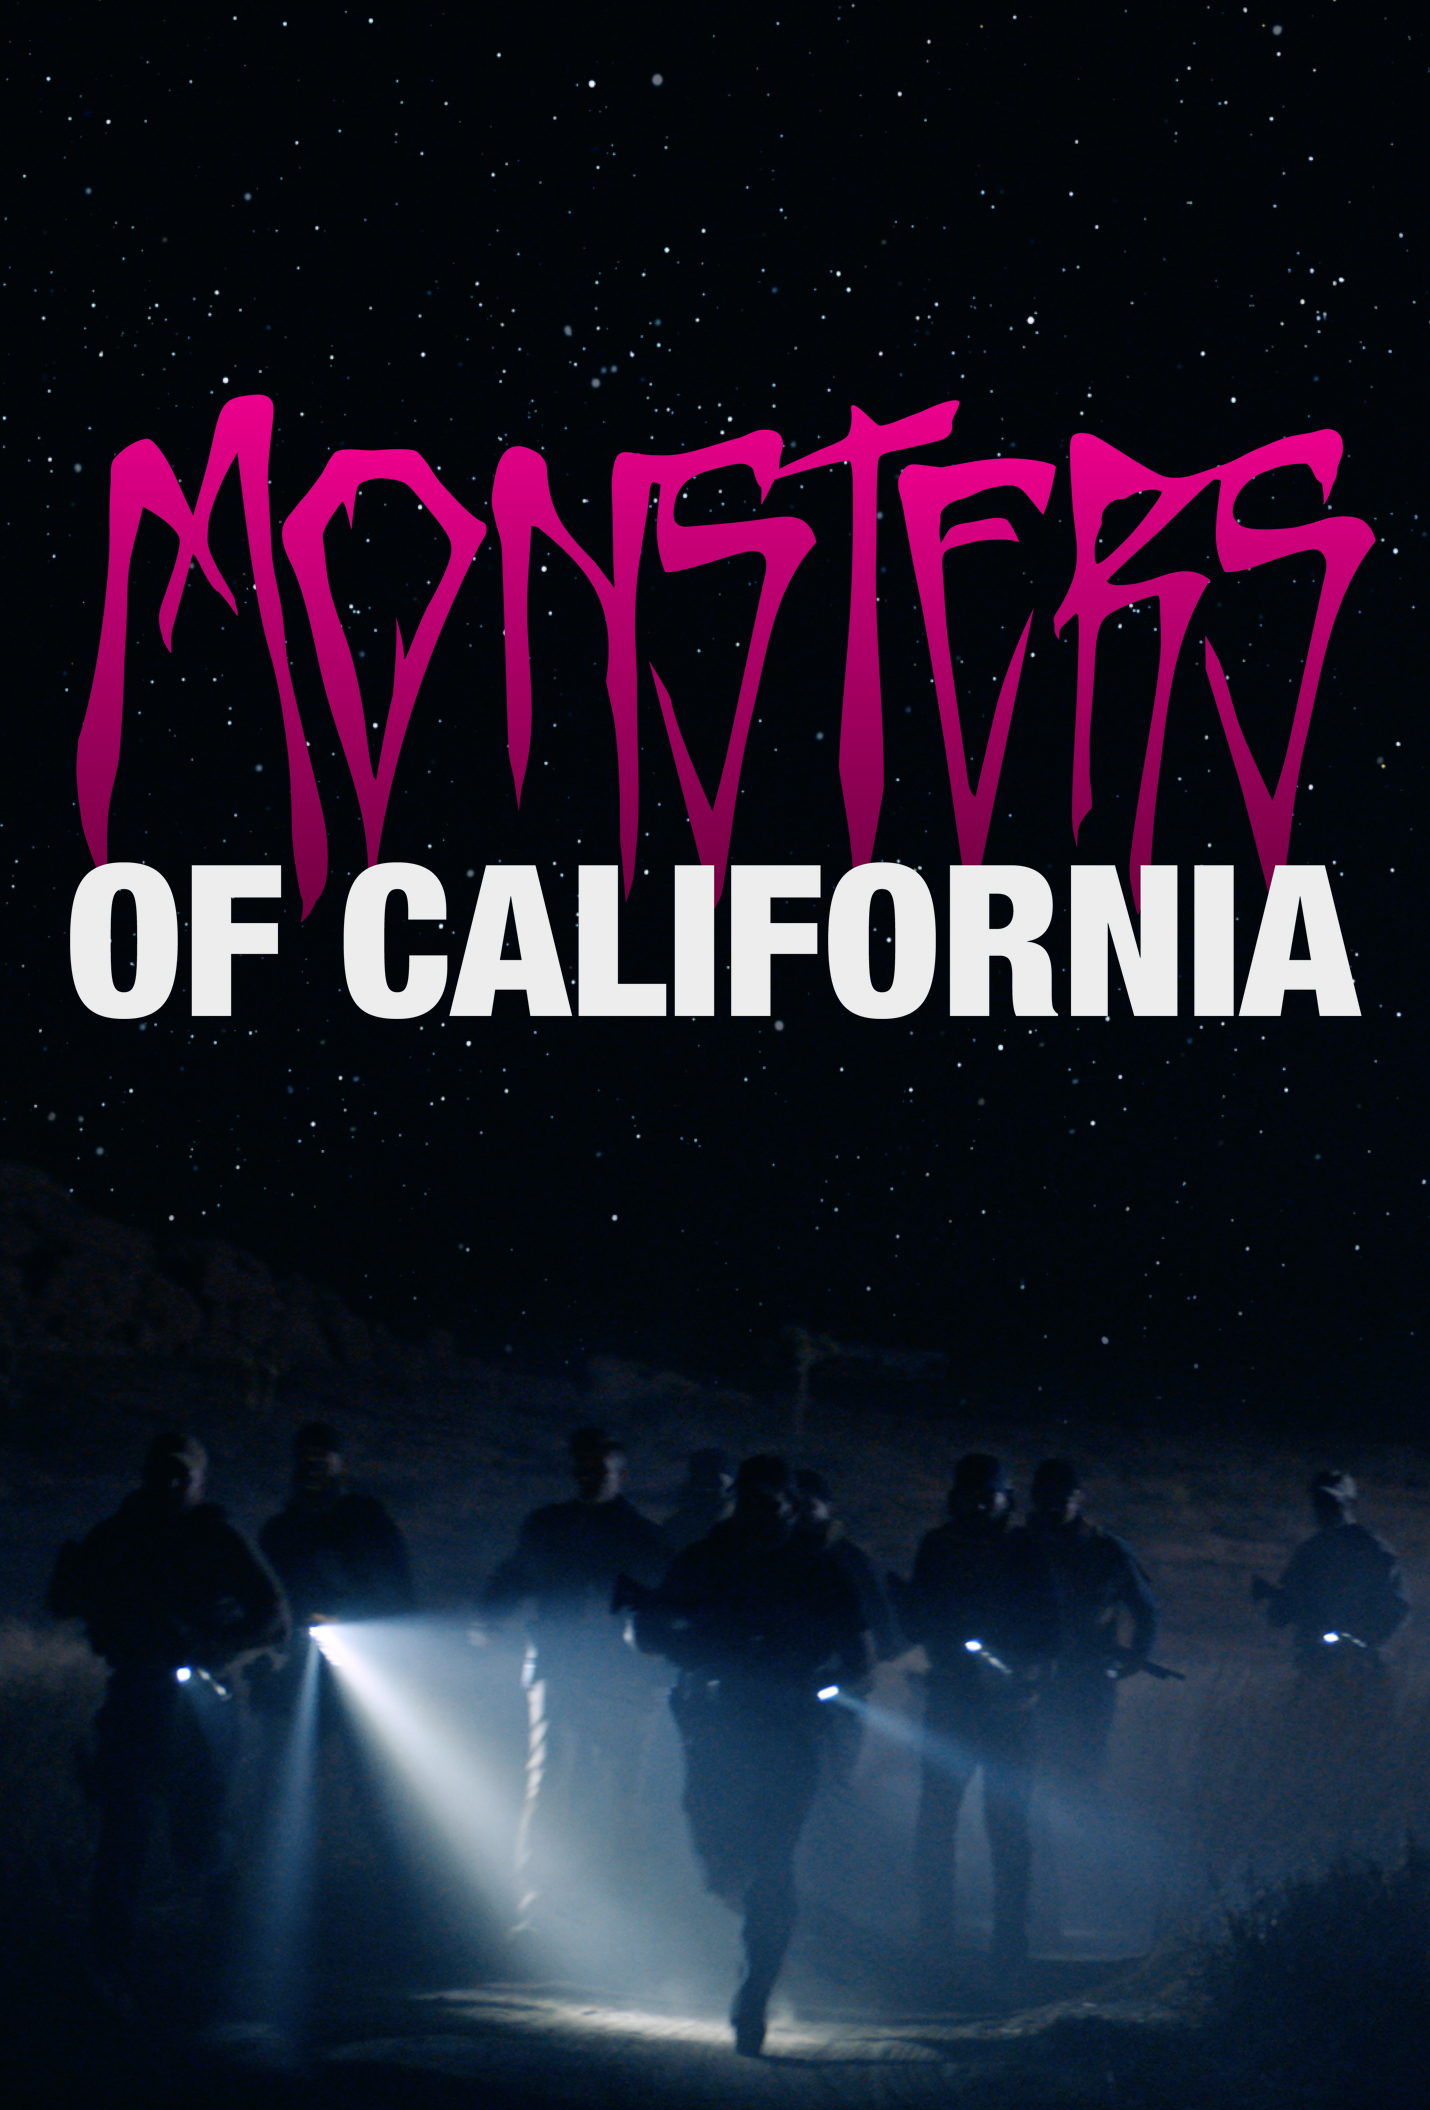 Monsters of California: il trailer dello sci-fi diretto dal frontman dei Blink-182